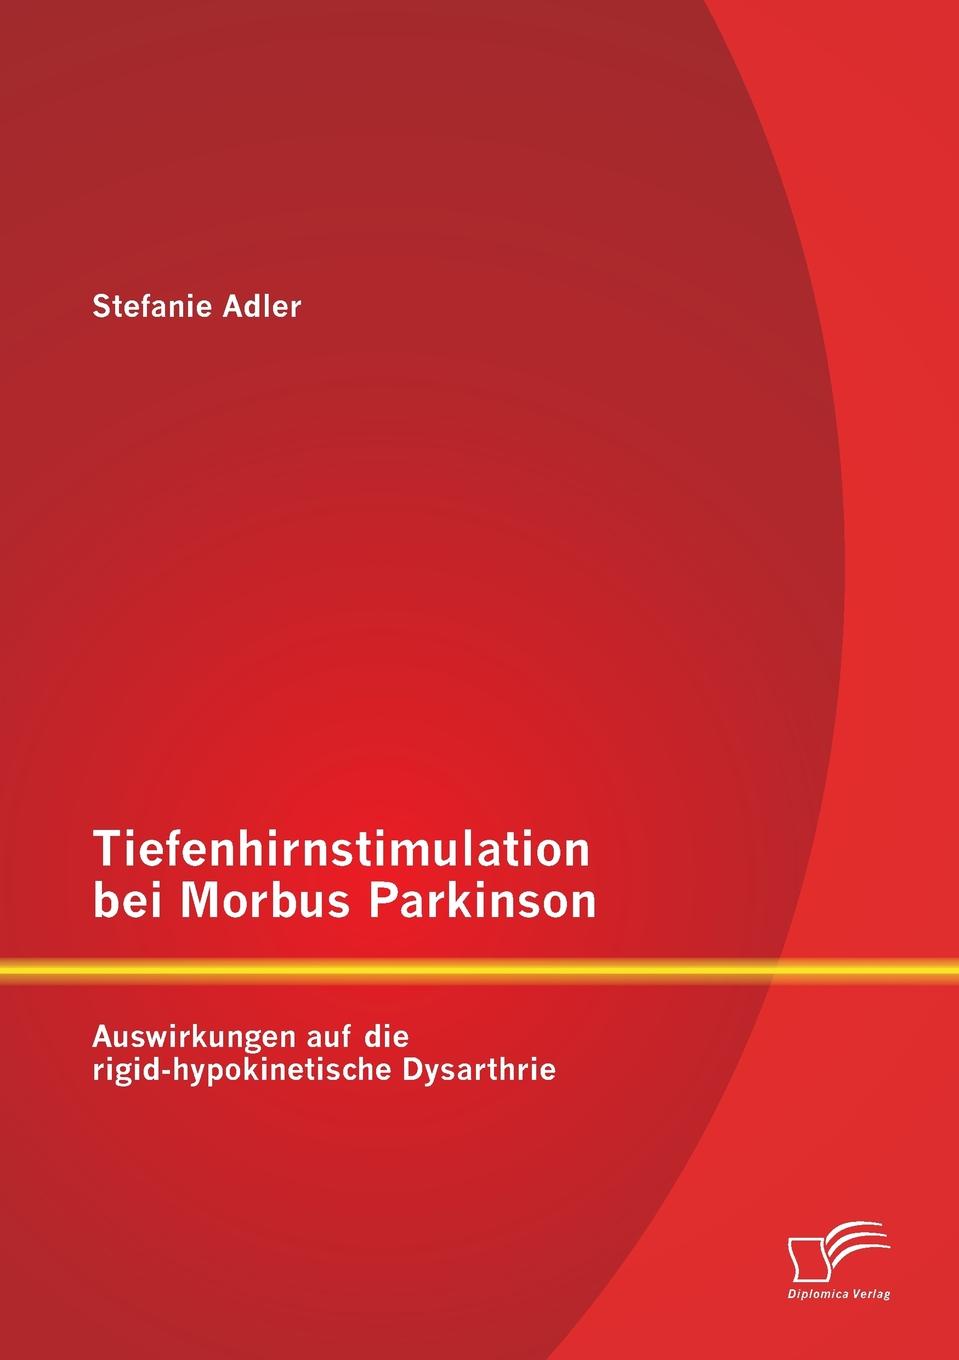 Tiefenhirnstimulation Bei Morbus Parkinson. Auswirkungen Auf Die Rigid-Hypokinetische Dysarthrie